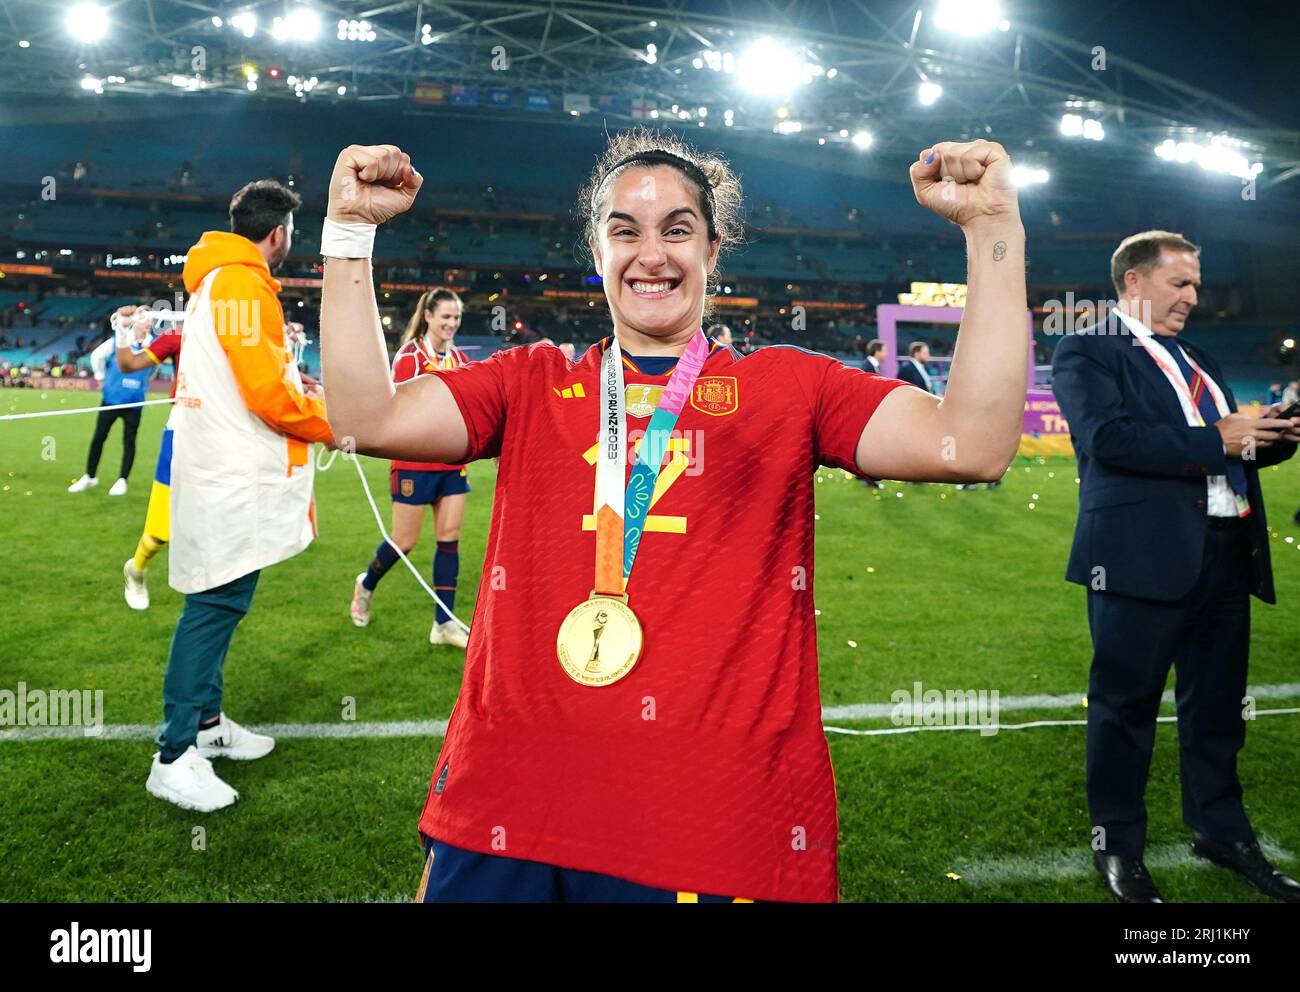 Spaniens Oihane Hernandez feiert nach dem Endspiel der FIFA-Frauen-Weltmeisterschaft im Stadion Australien, Sydney. Bilddatum: Sonntag, 20. August 2023. Stockfoto